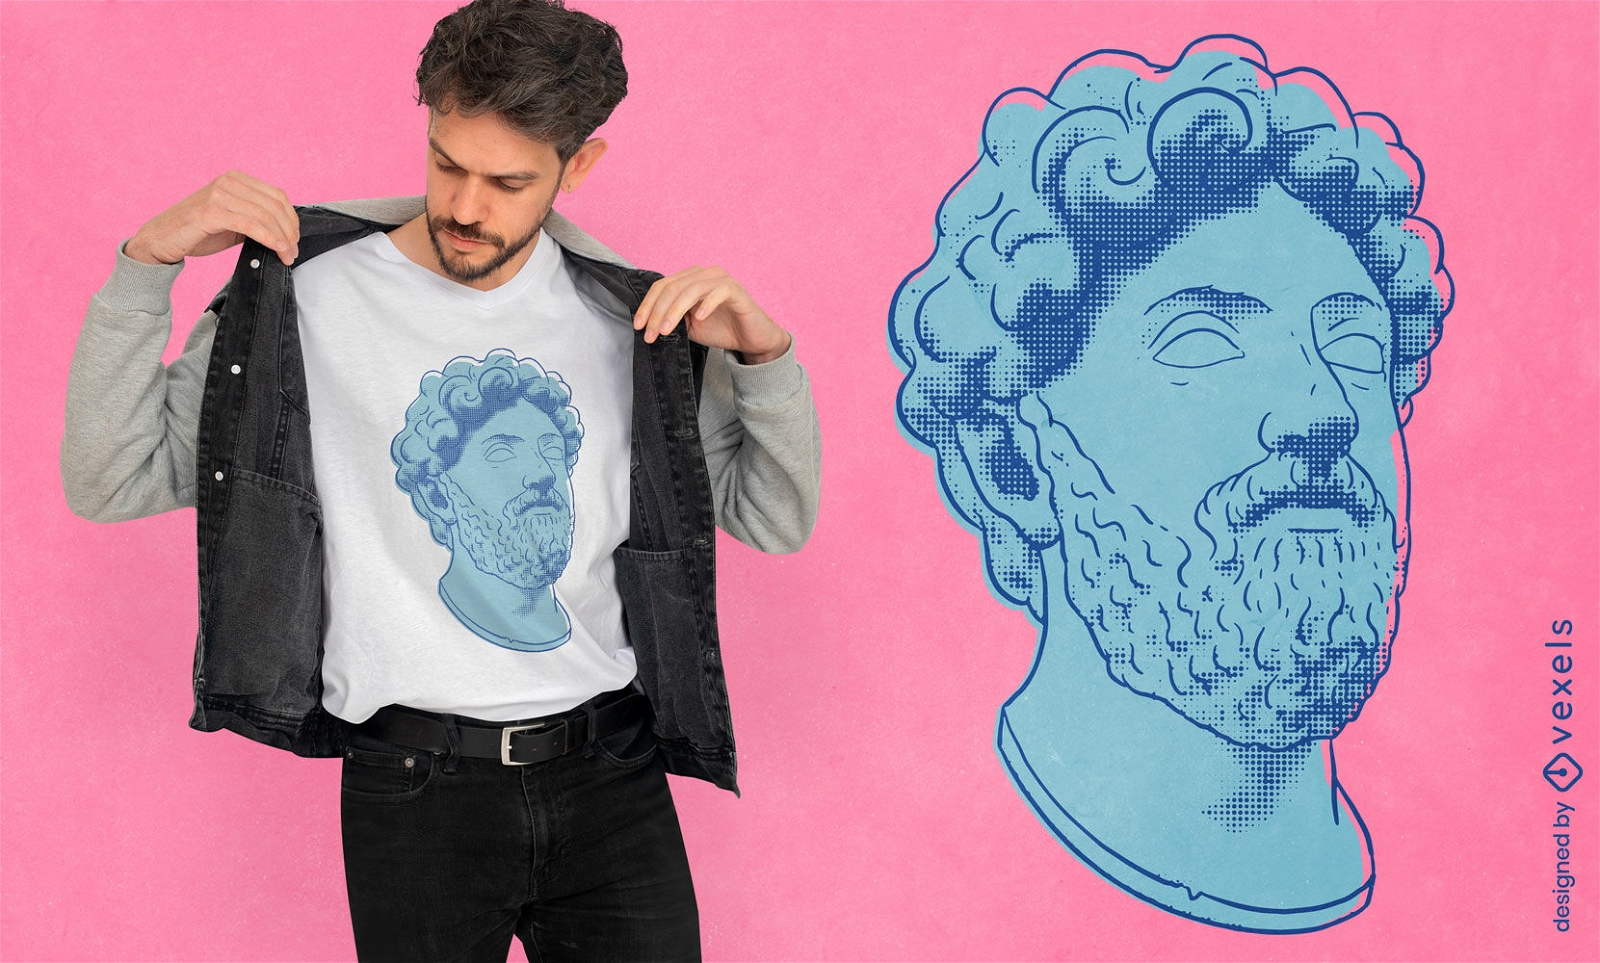 Dise?o de camiseta con cabeza de estatua de Marco Aurelio.